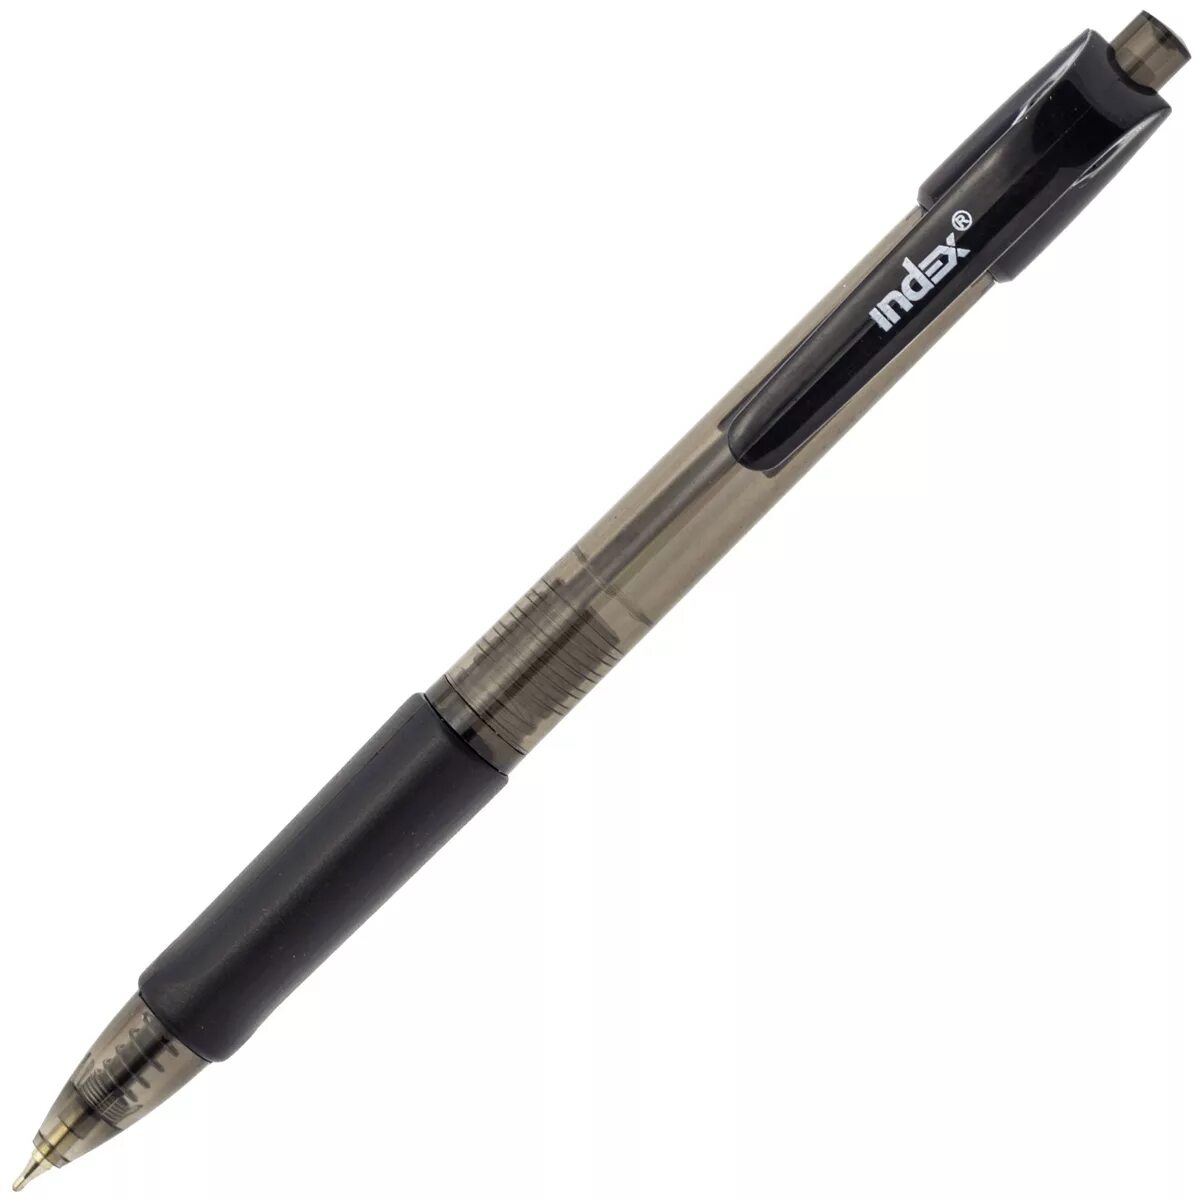 Масляные черные ручки. Ручка Index ibp602/bu синяя. Index" ручка шариковая автоматическая 0.7 мм ibp602/bu синяя. Ручка Index imwt1143. Ручка Index 0.7 ICBP 100.